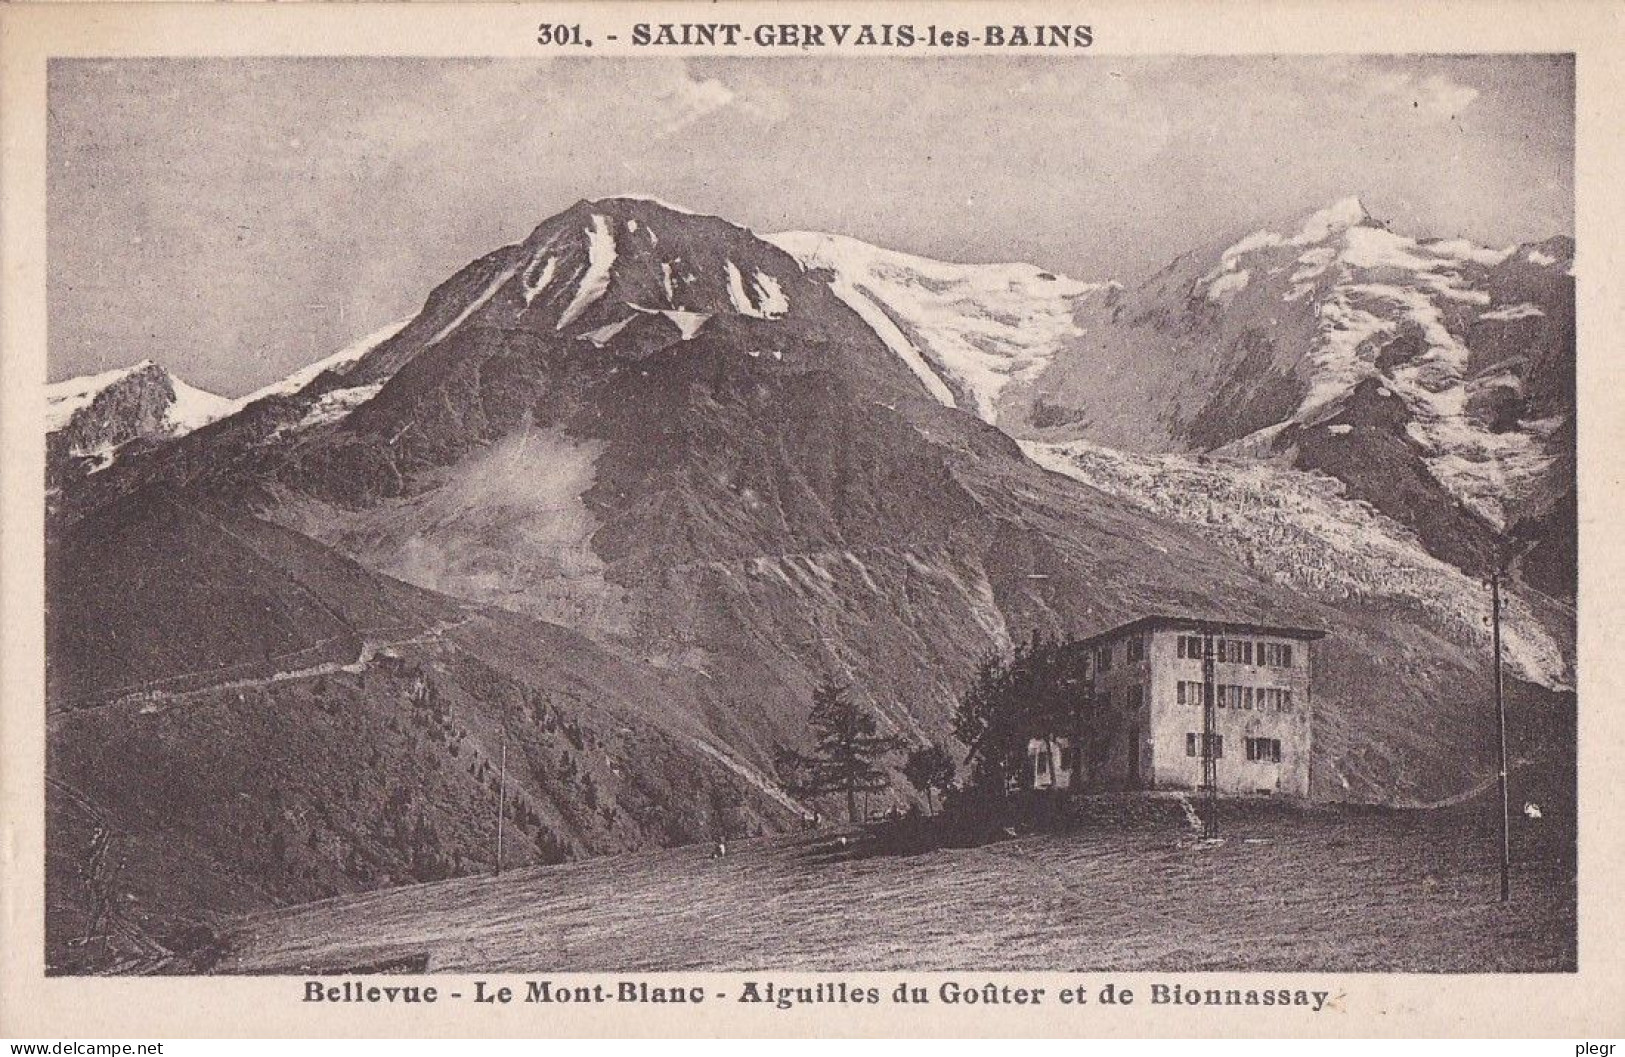 74236 01 34#0 - ST GERVAIS LES BAINS - BELLEVUE - LE MONT BLANC - AIGUILLES DU GOÛTER ET DE BIONNASSAY - Saint-Gervais-les-Bains